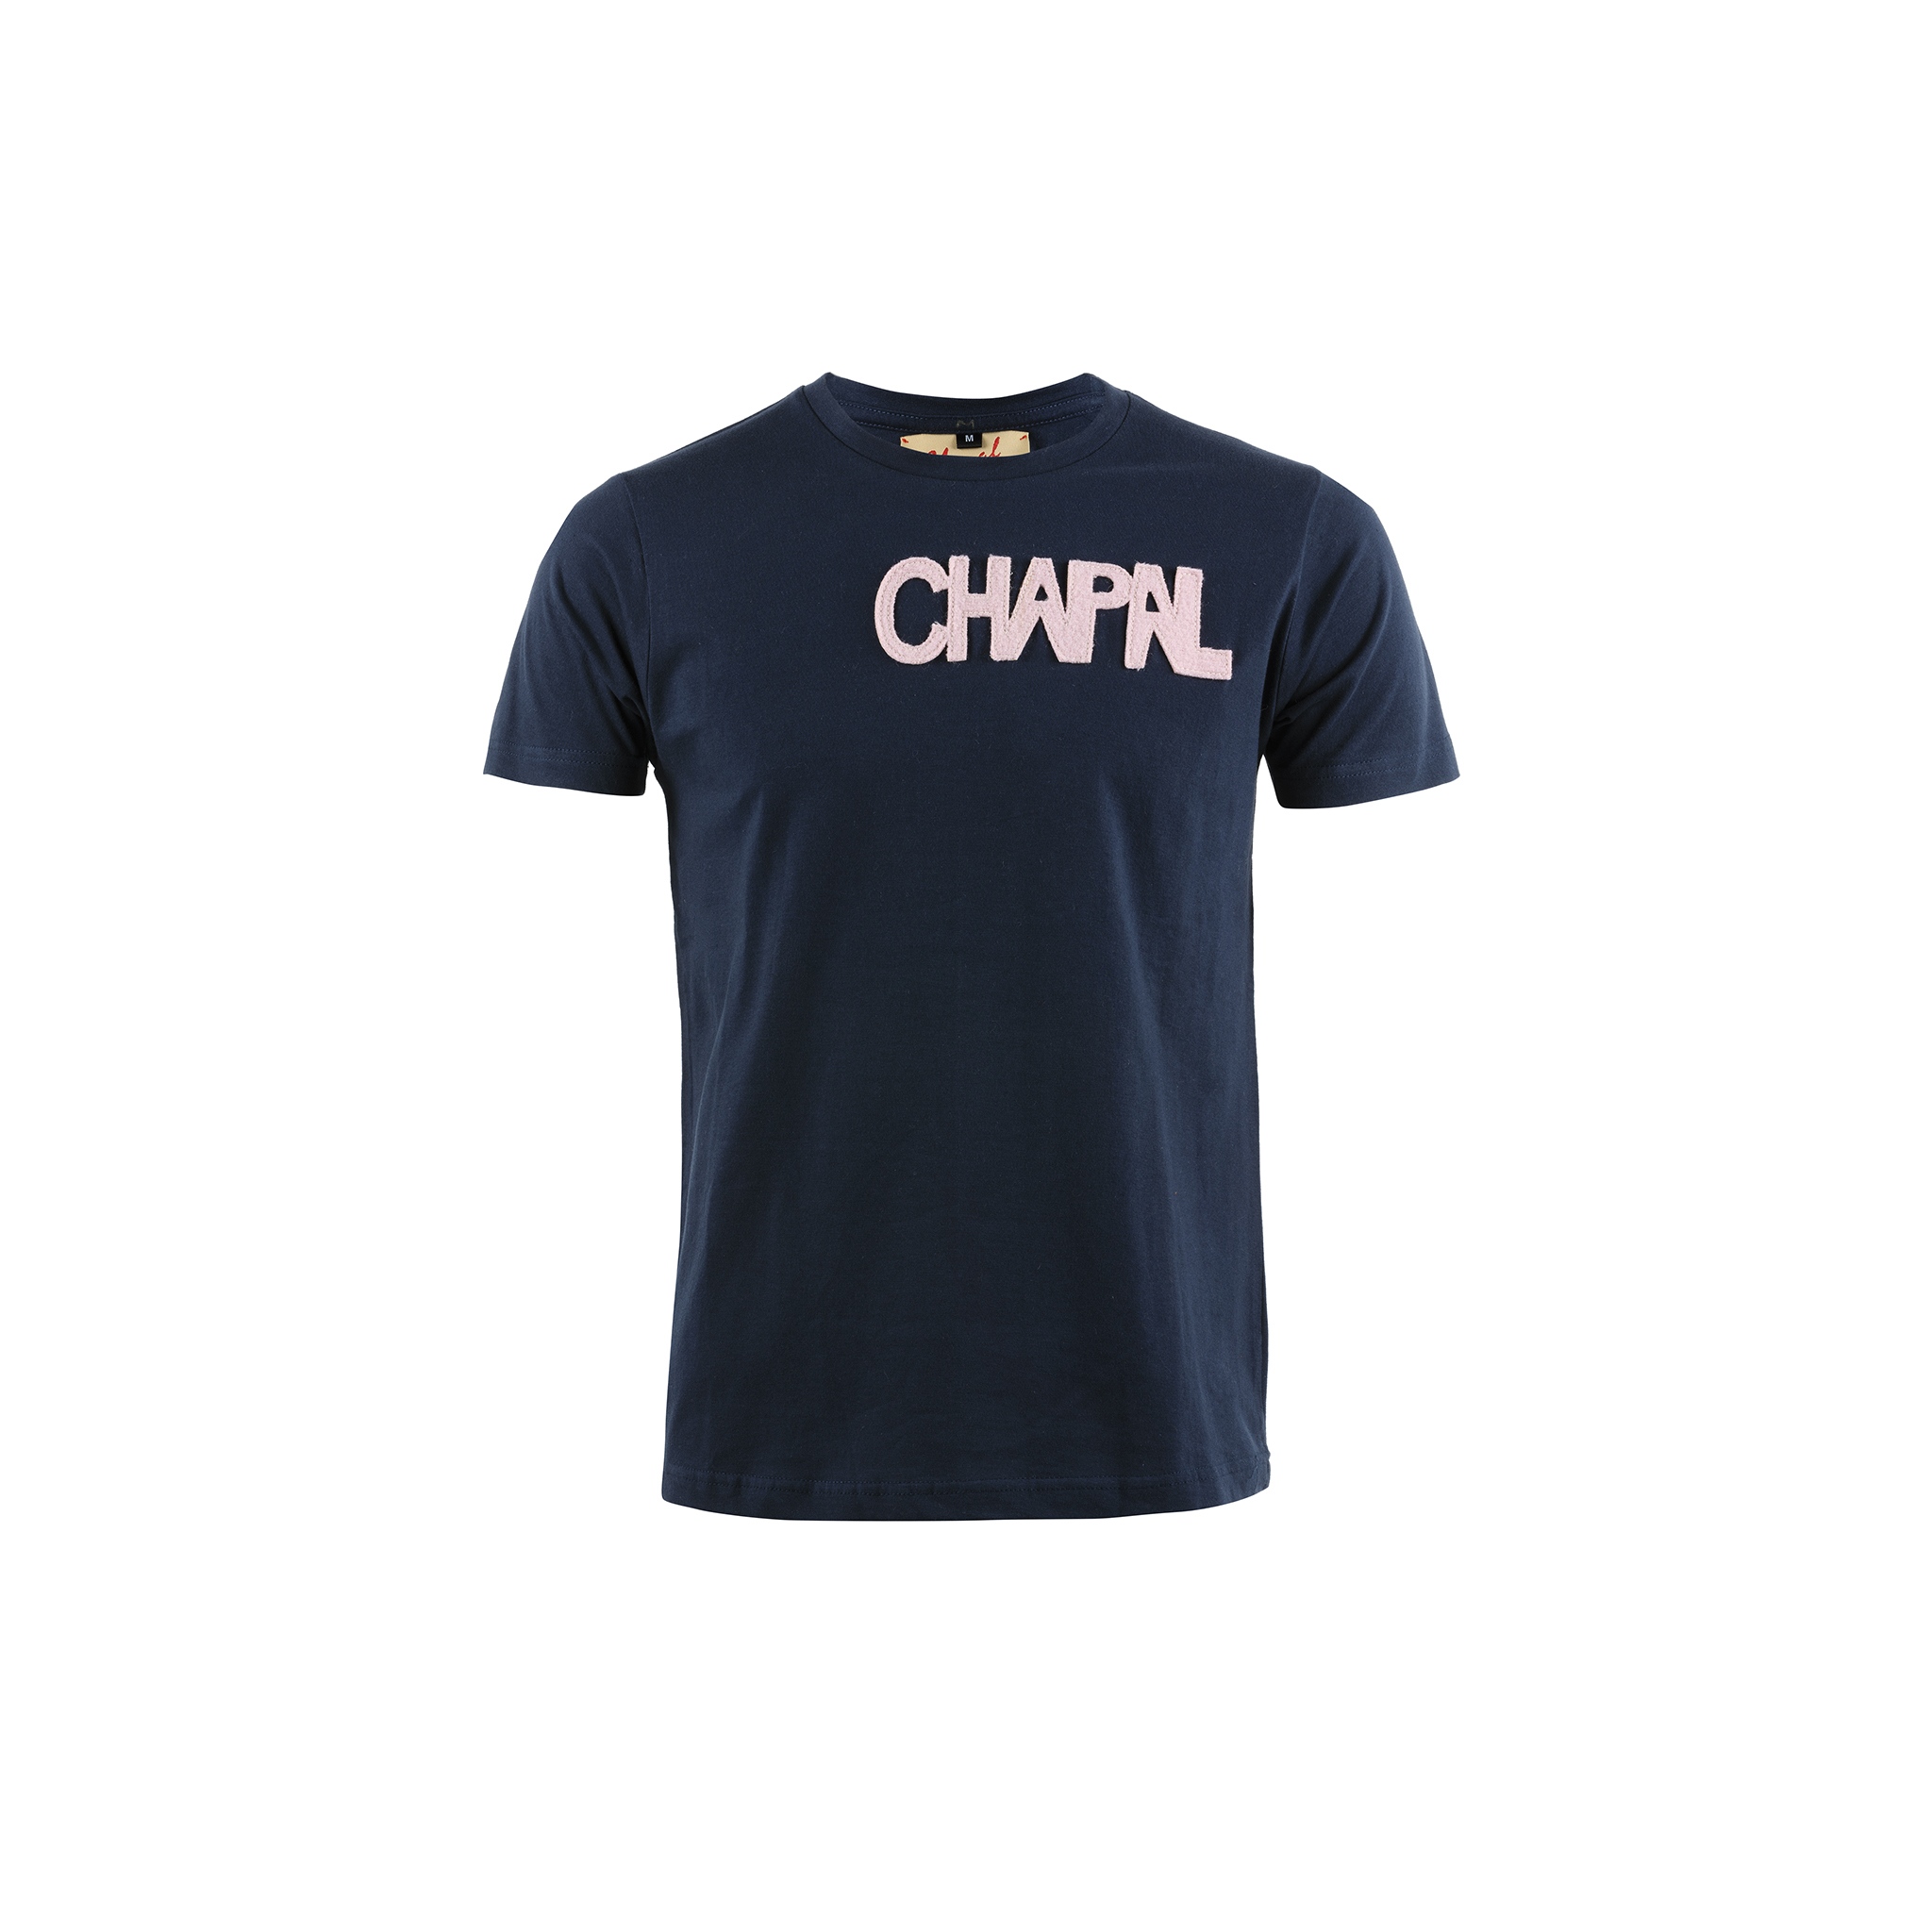 T-shirt Lettres Manches Courtes - Jersey de coton et laine - Couleurs bleu et rose